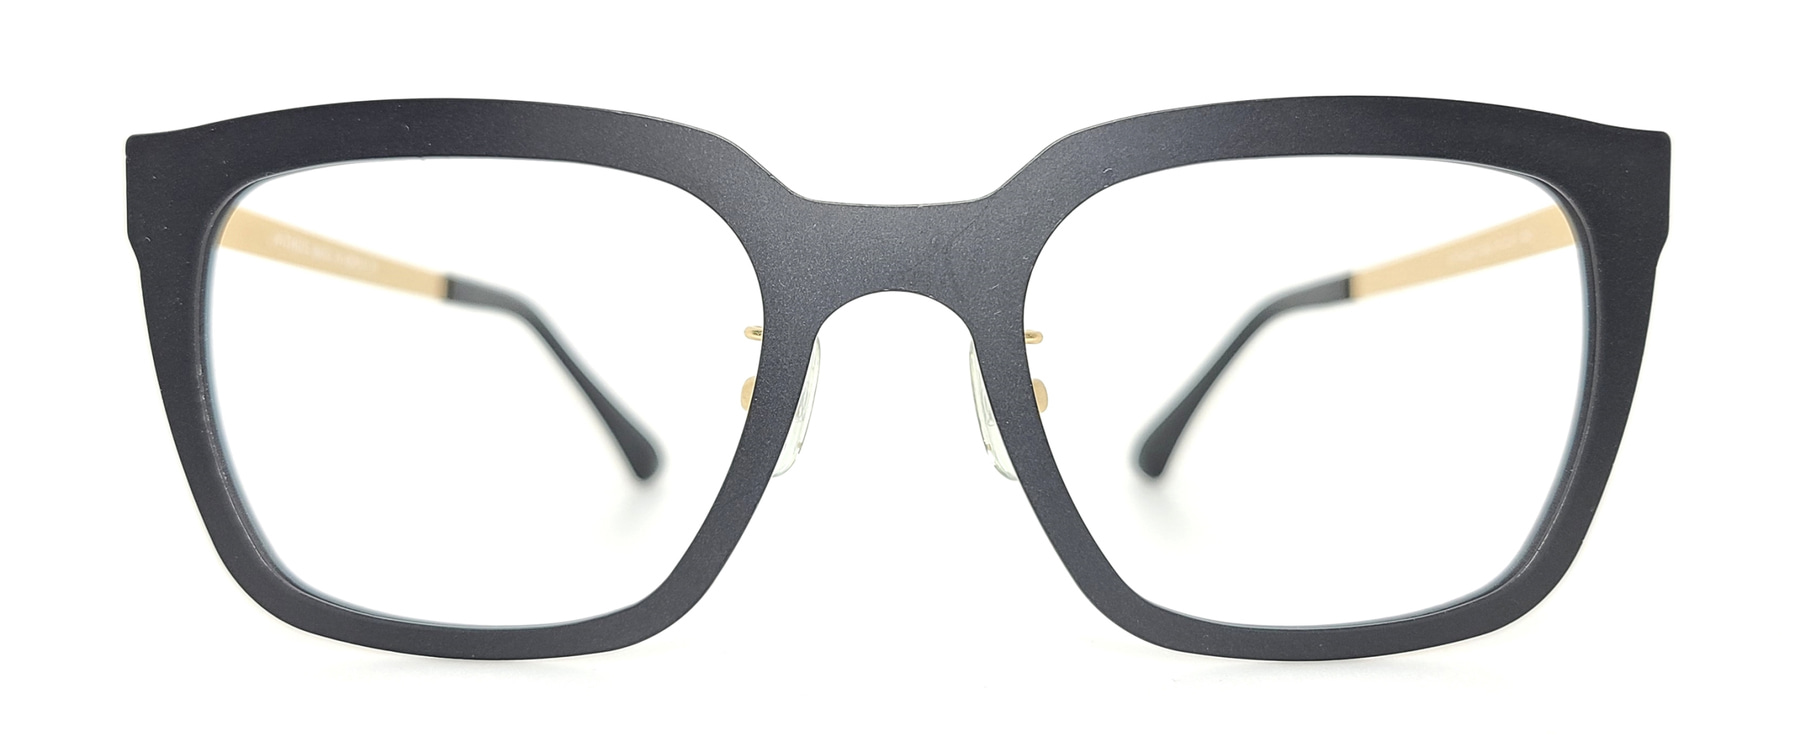 WITHUS-7303, Korean glasses, sunglasses, eyeglasses, glasses